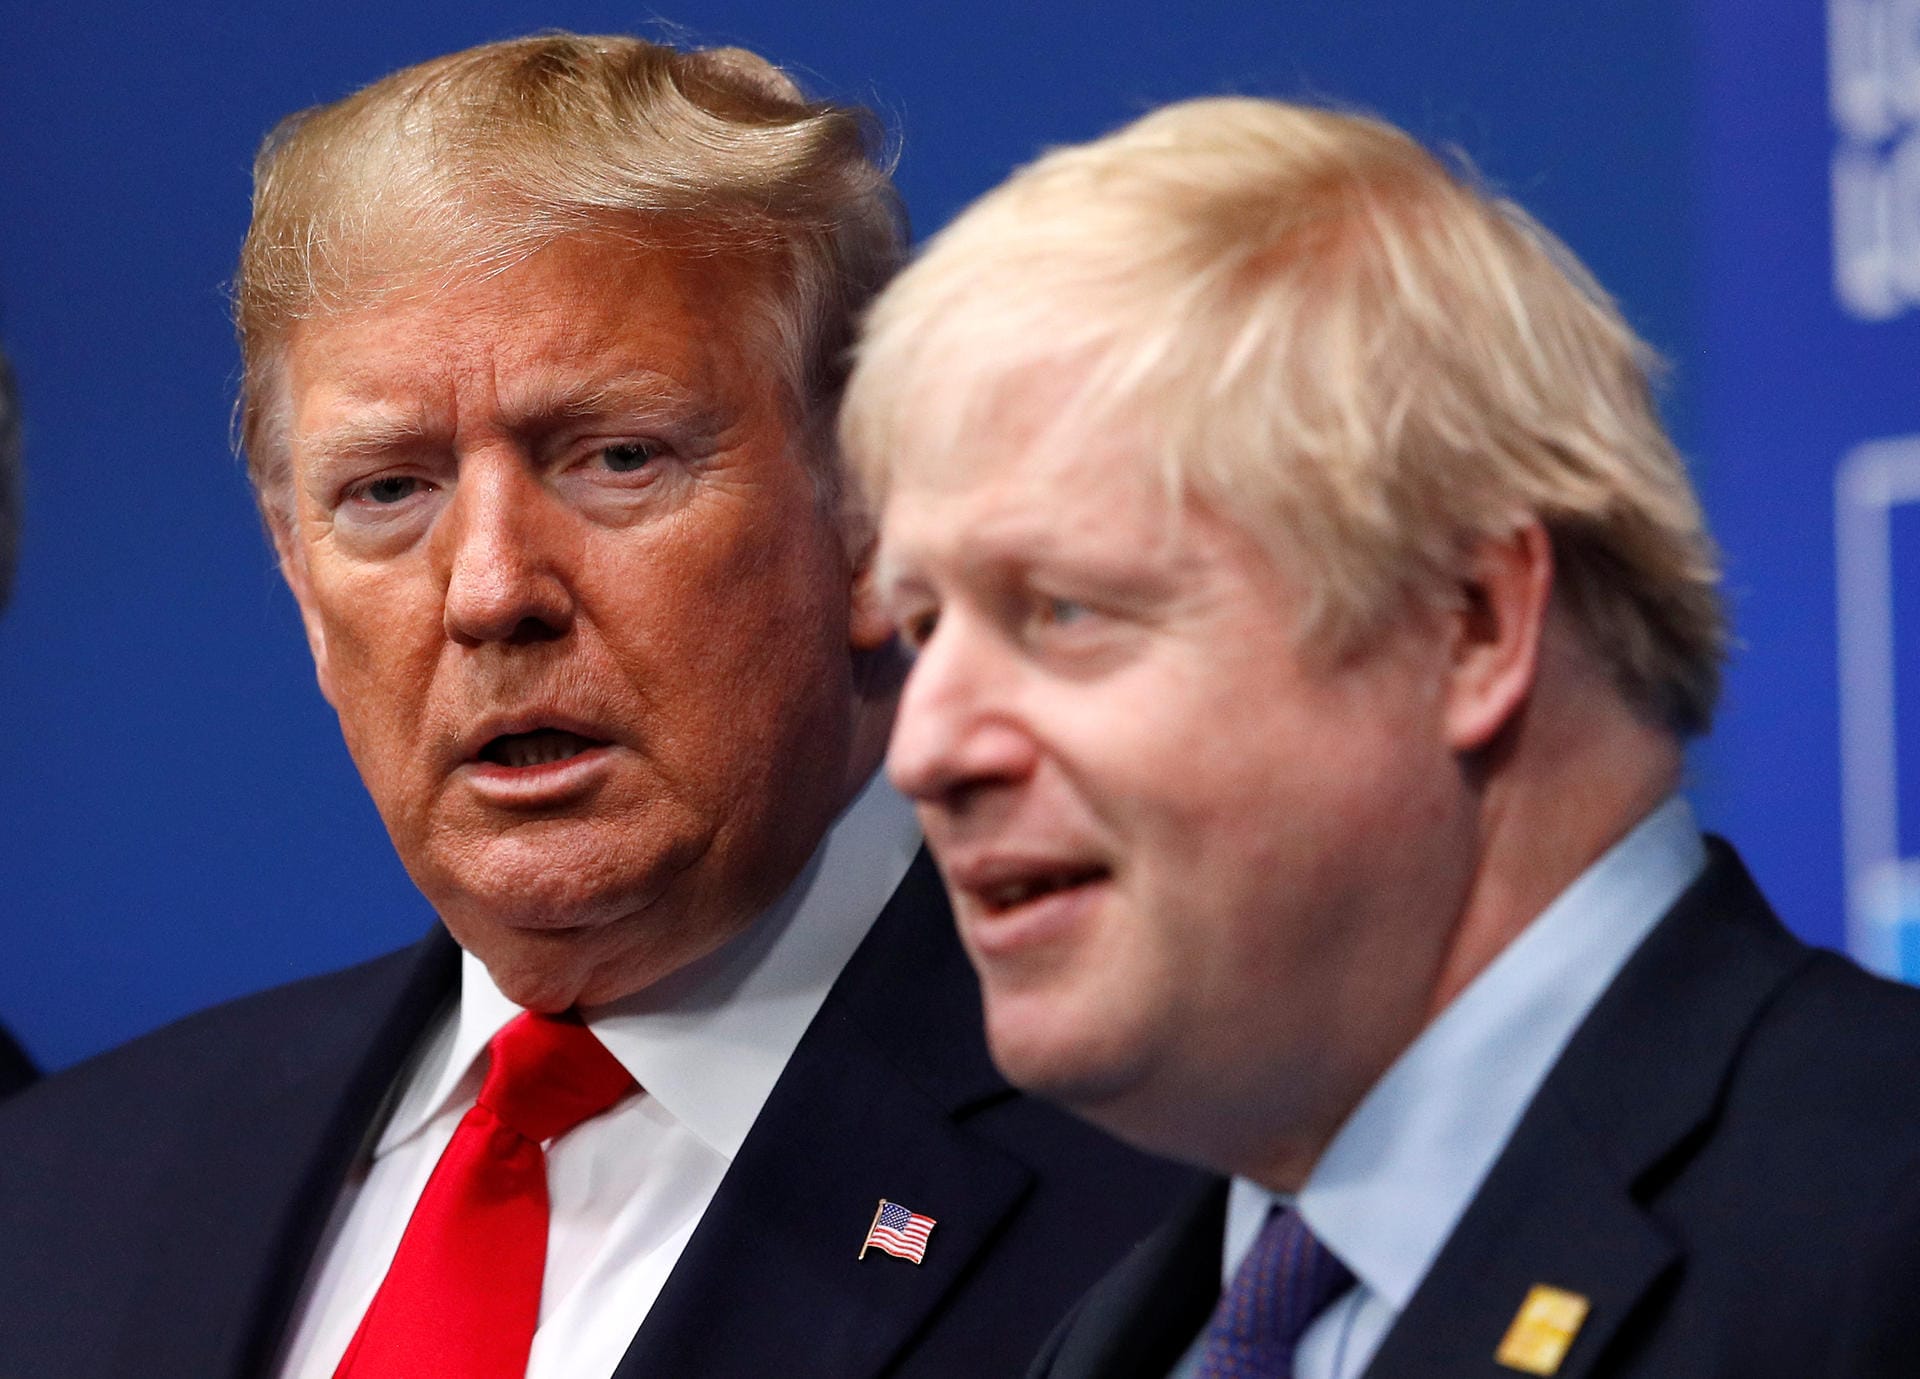 US-Präsident Donald Trump sagte, er sei "sehr betrübt" über die Nachrichten aus Großbritannien. Johnson sei ein "sehr guter Freund von mir und ein Freund unserer Nation". Alle Amerikaner würden für seine Genesung beten.